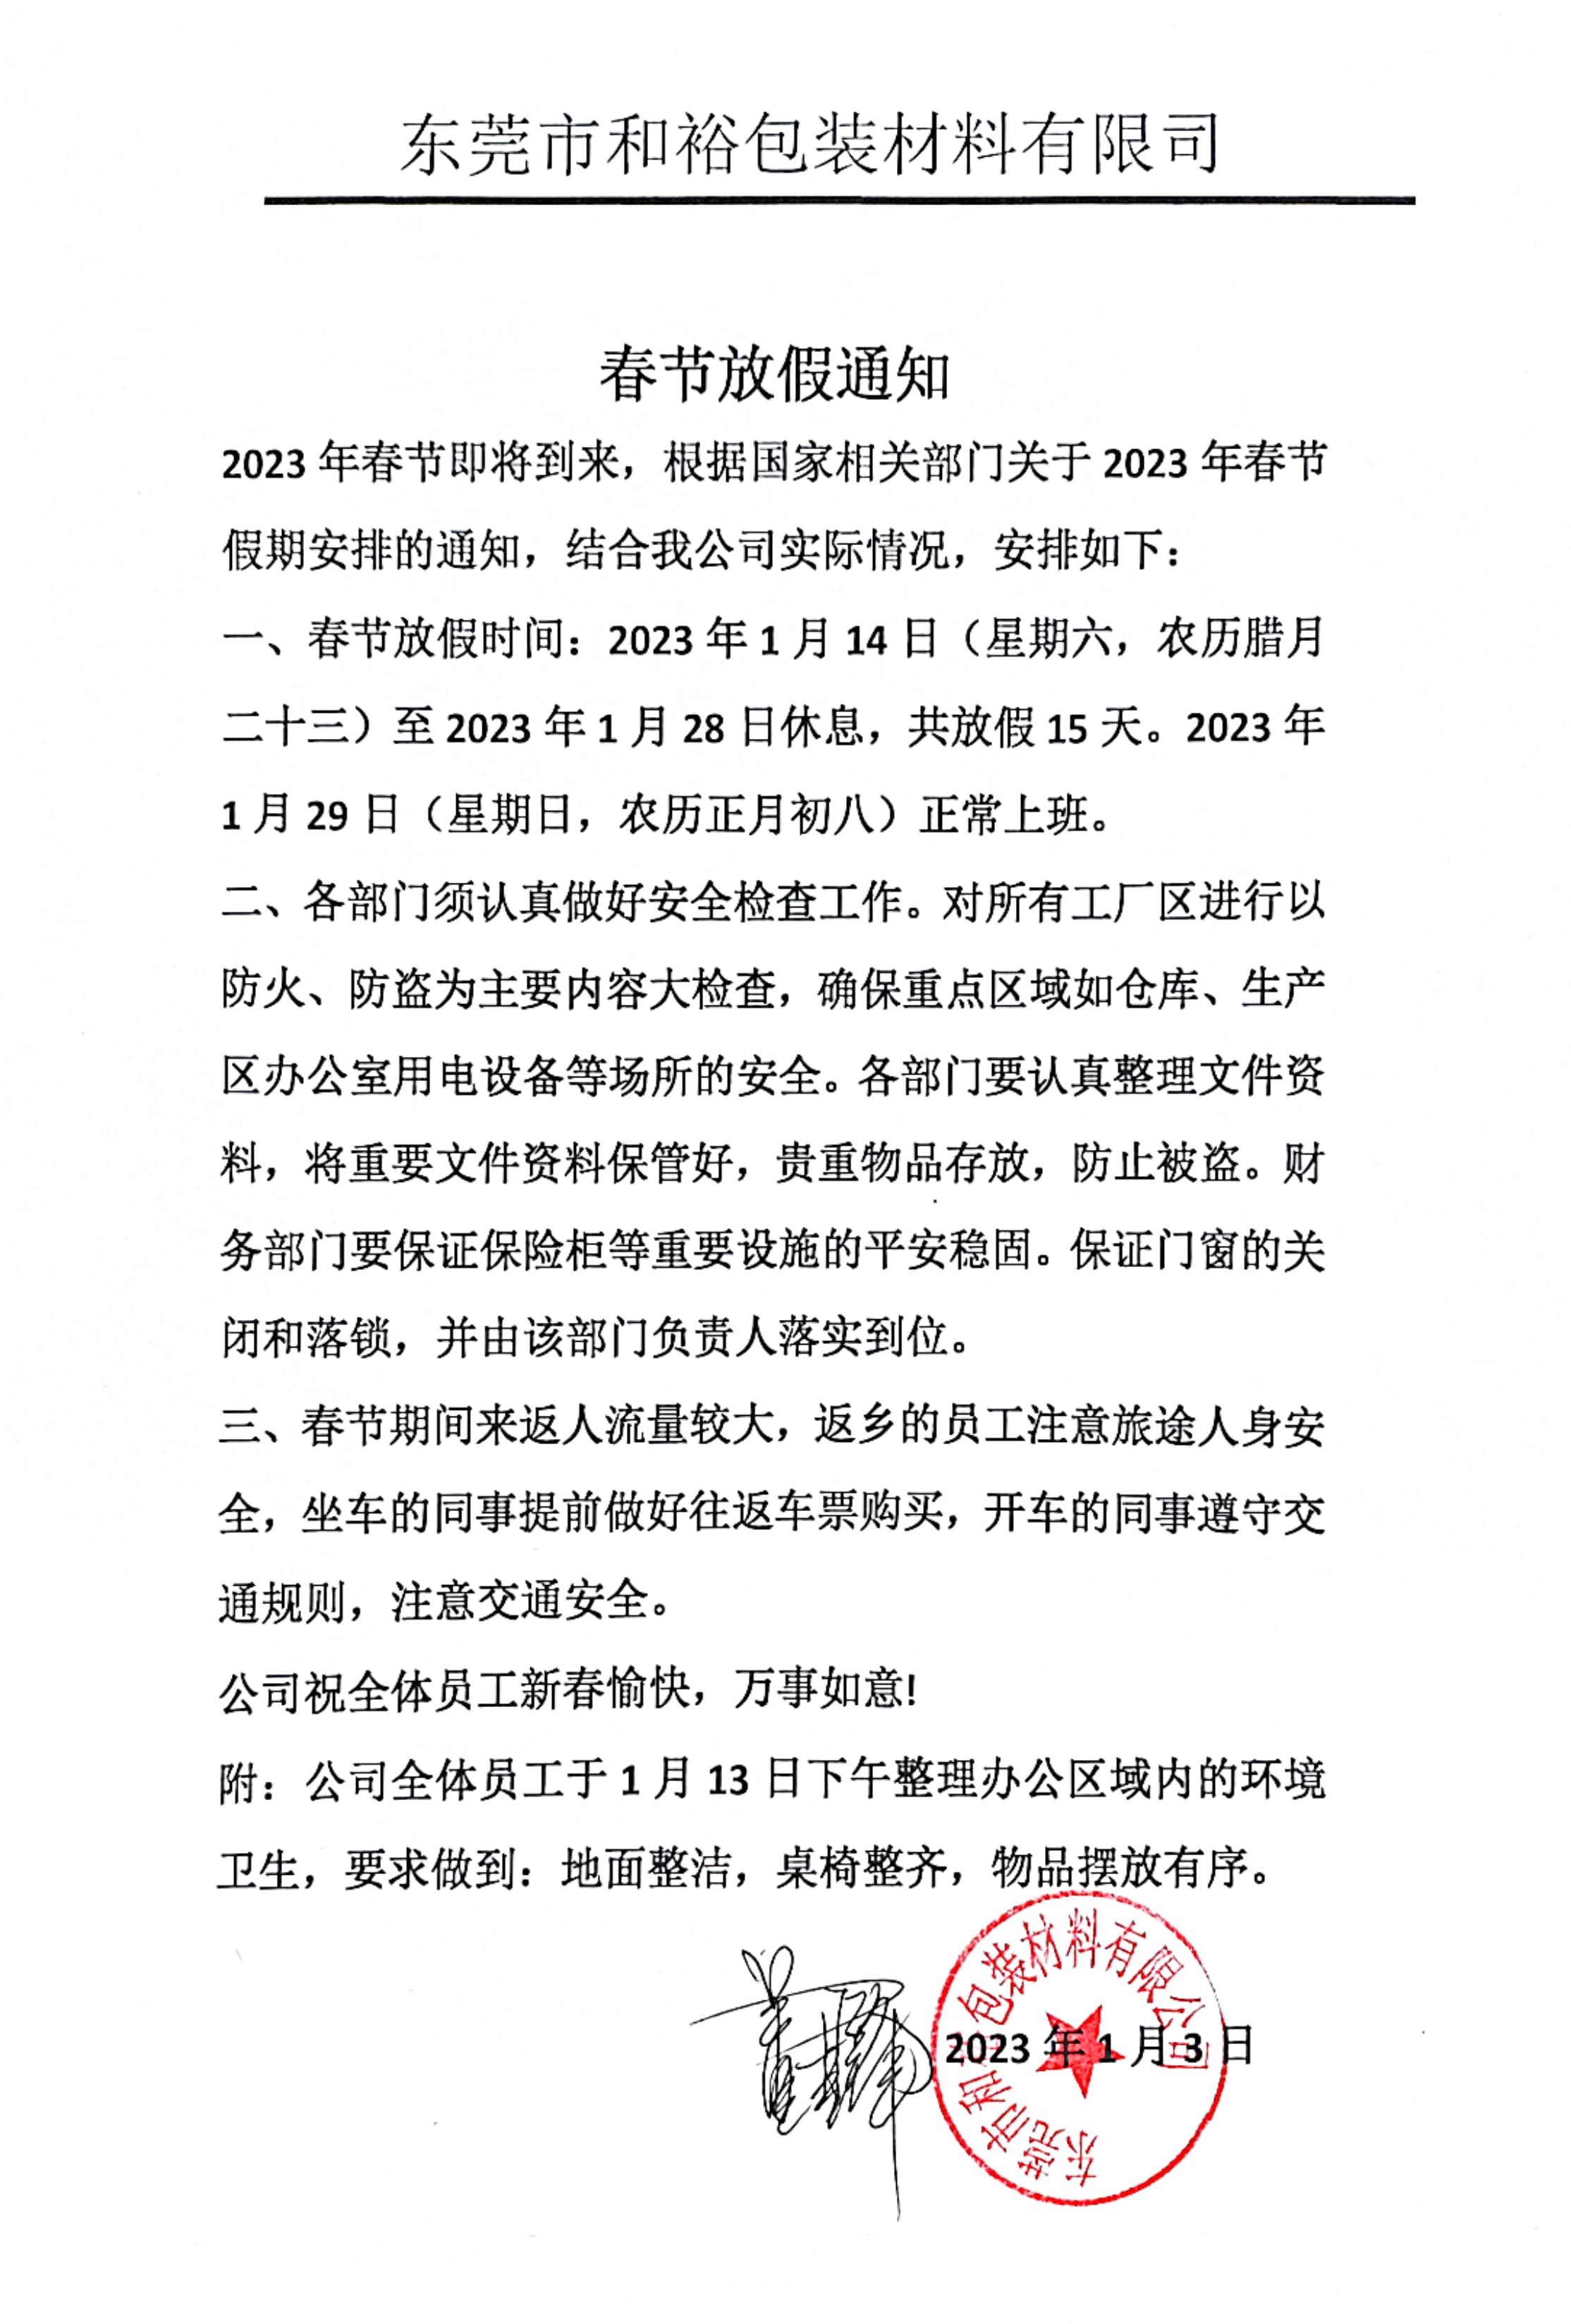 丽江市2023年和裕包装春节放假通知